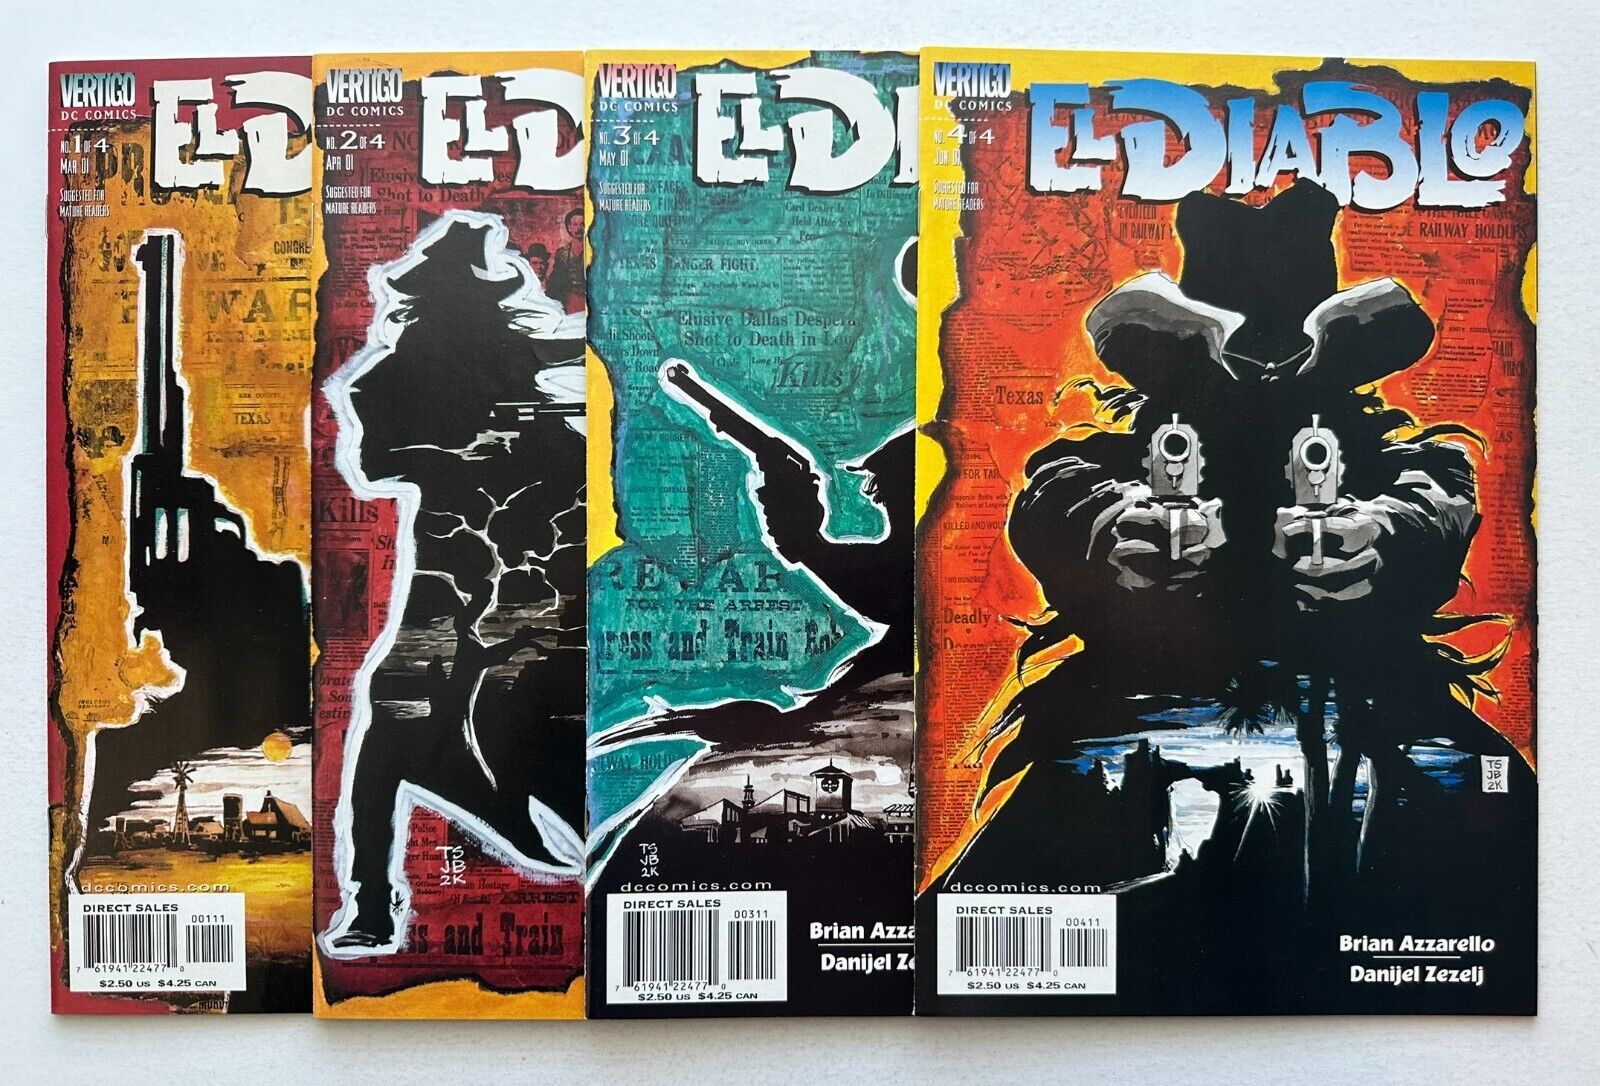 EL DIABLO #1-4 (VF/NM), Complete Series, 1st Print, Vertigo 2001, Azzarello